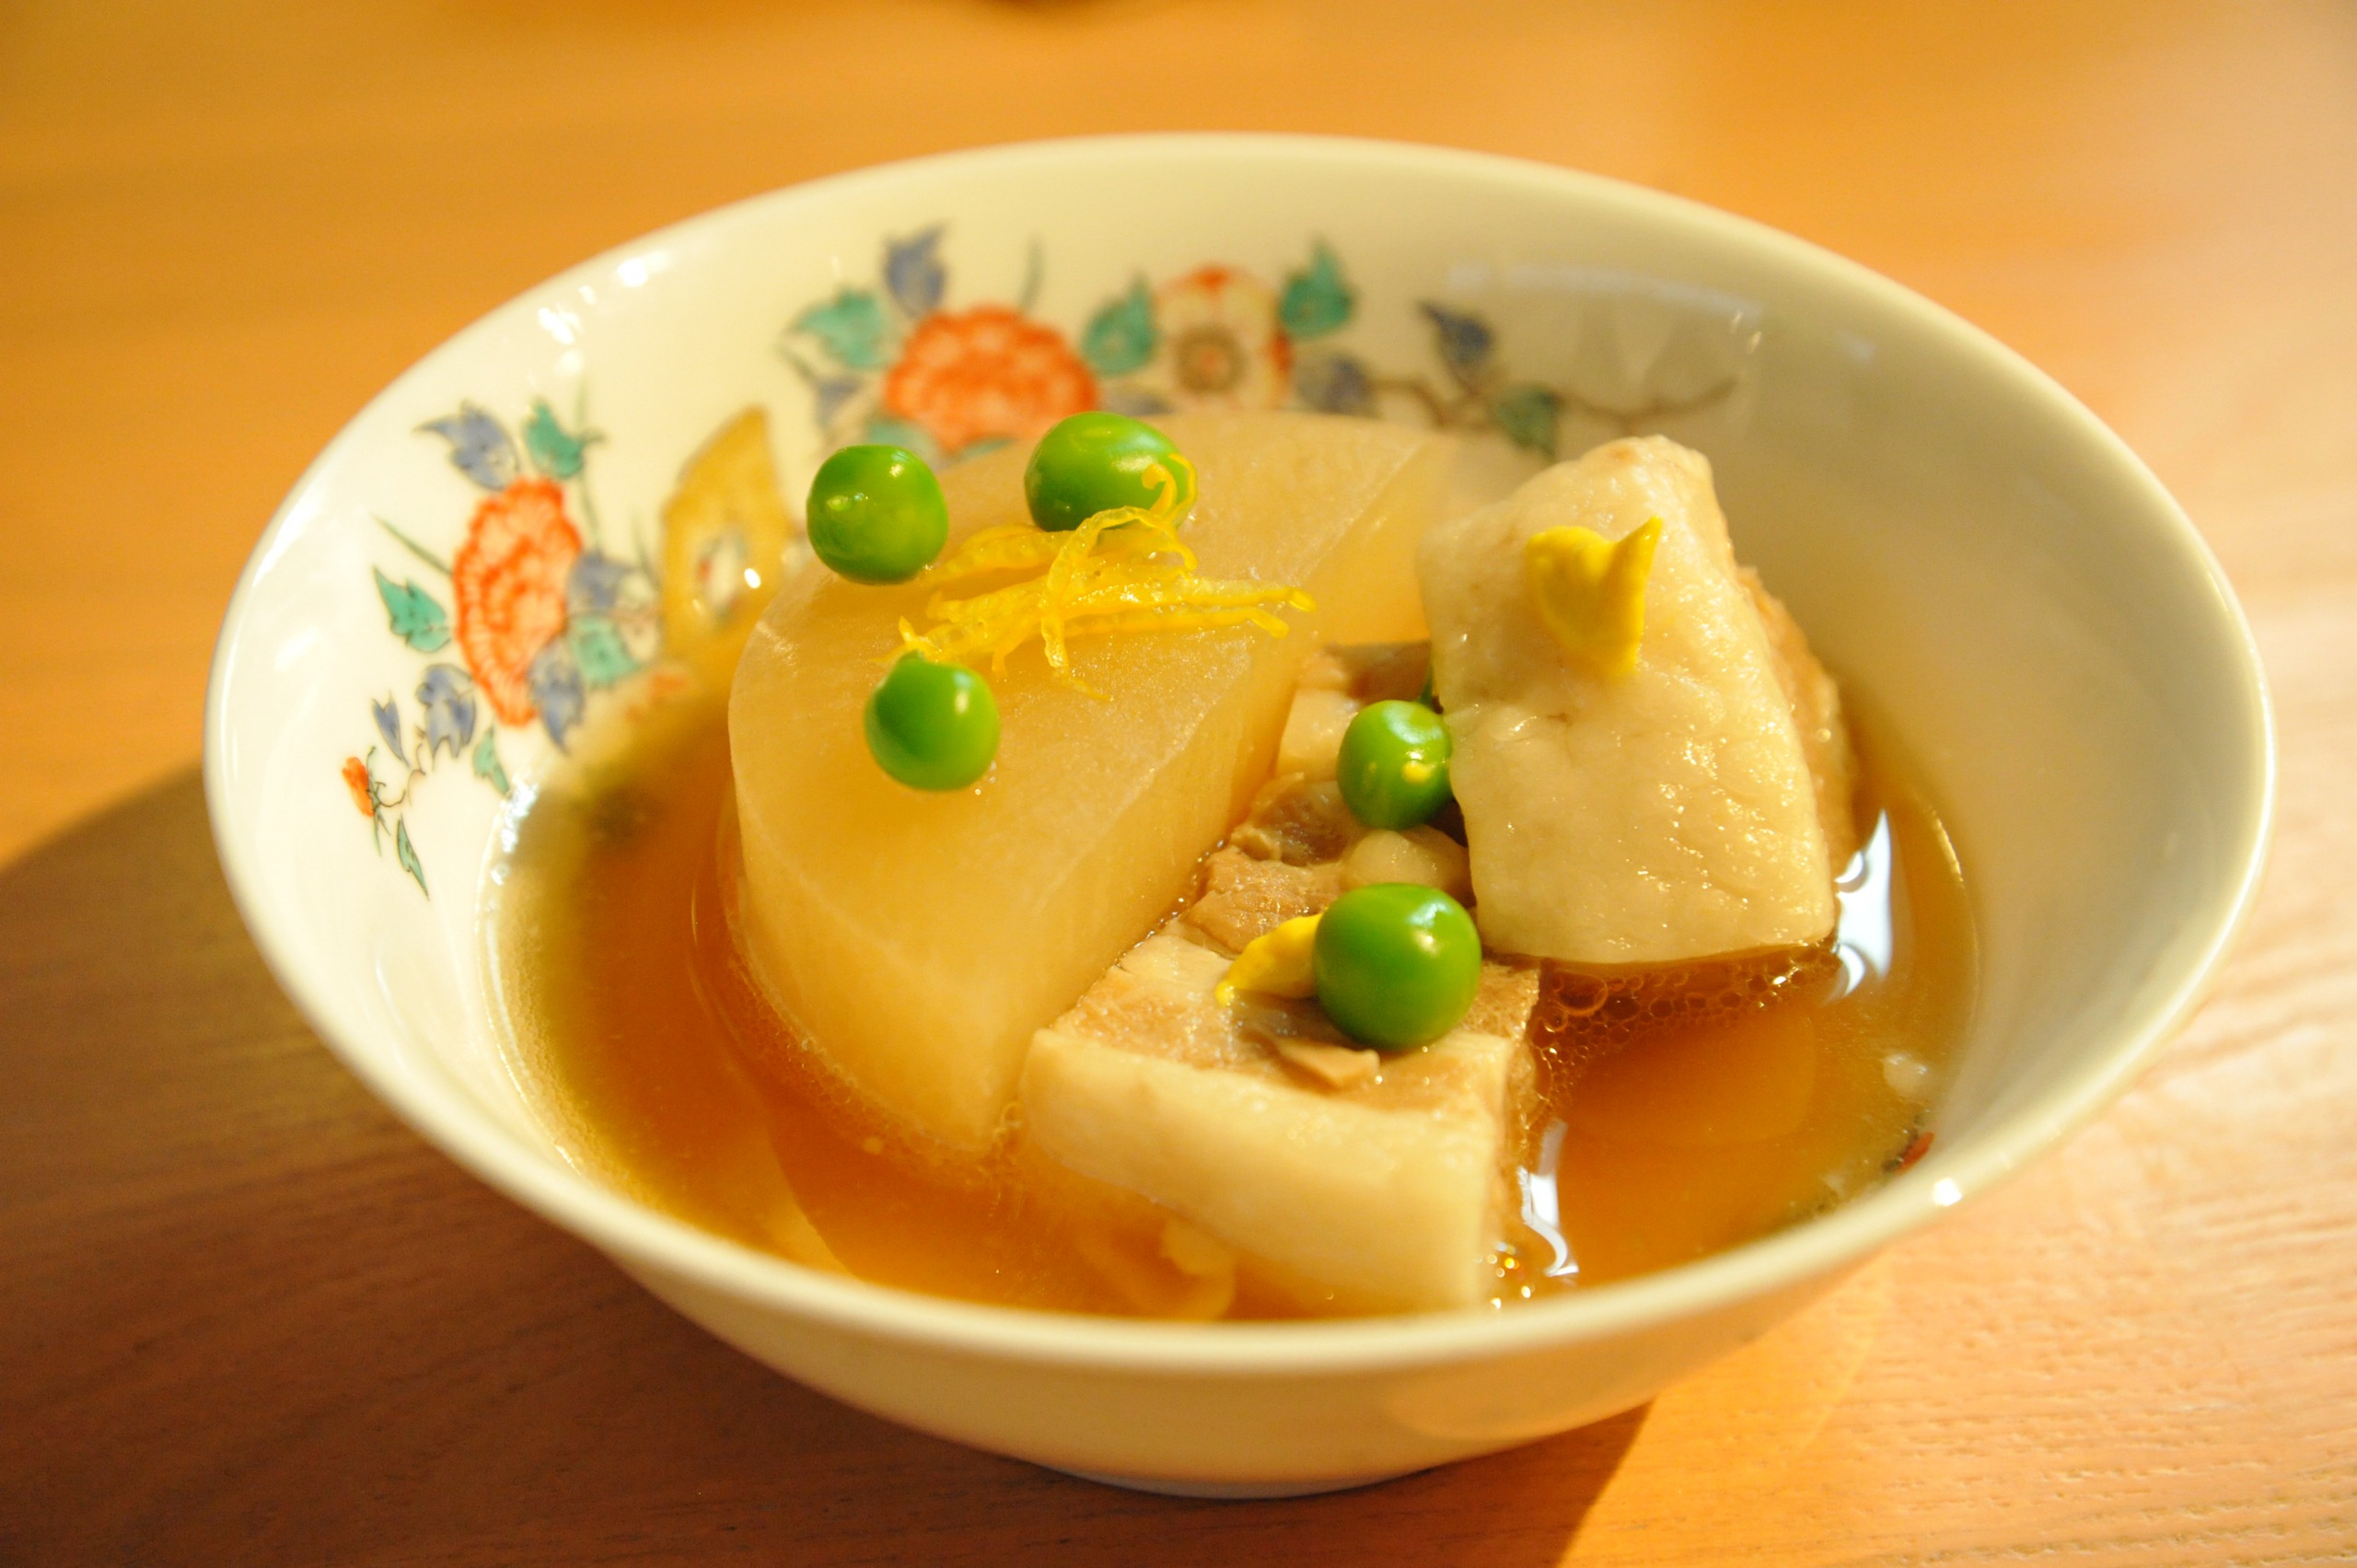 【煮物】 神奈川県愛甲郡清川村　清川恵水ポーク角煮。肉質がきめ細かく柔らかで甘みのある脂はさらりとしています。